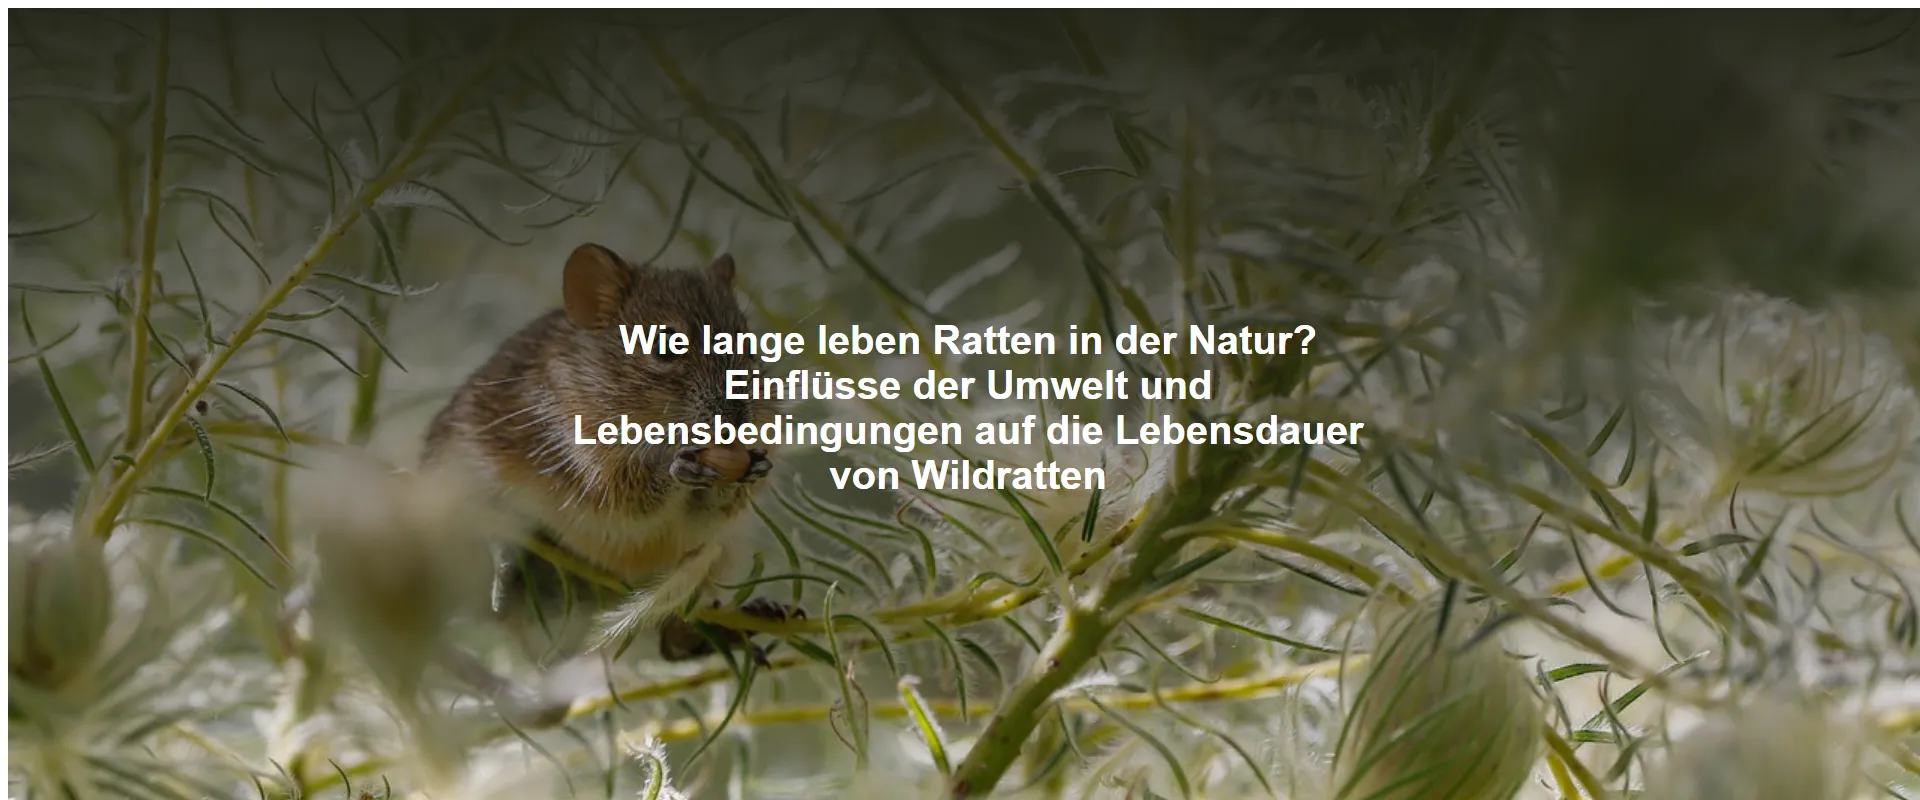 Wie lange leben Ratten in der Natur? Einflüsse der Umwelt und Lebensbedingungen auf die Lebensdauer von Wildratten